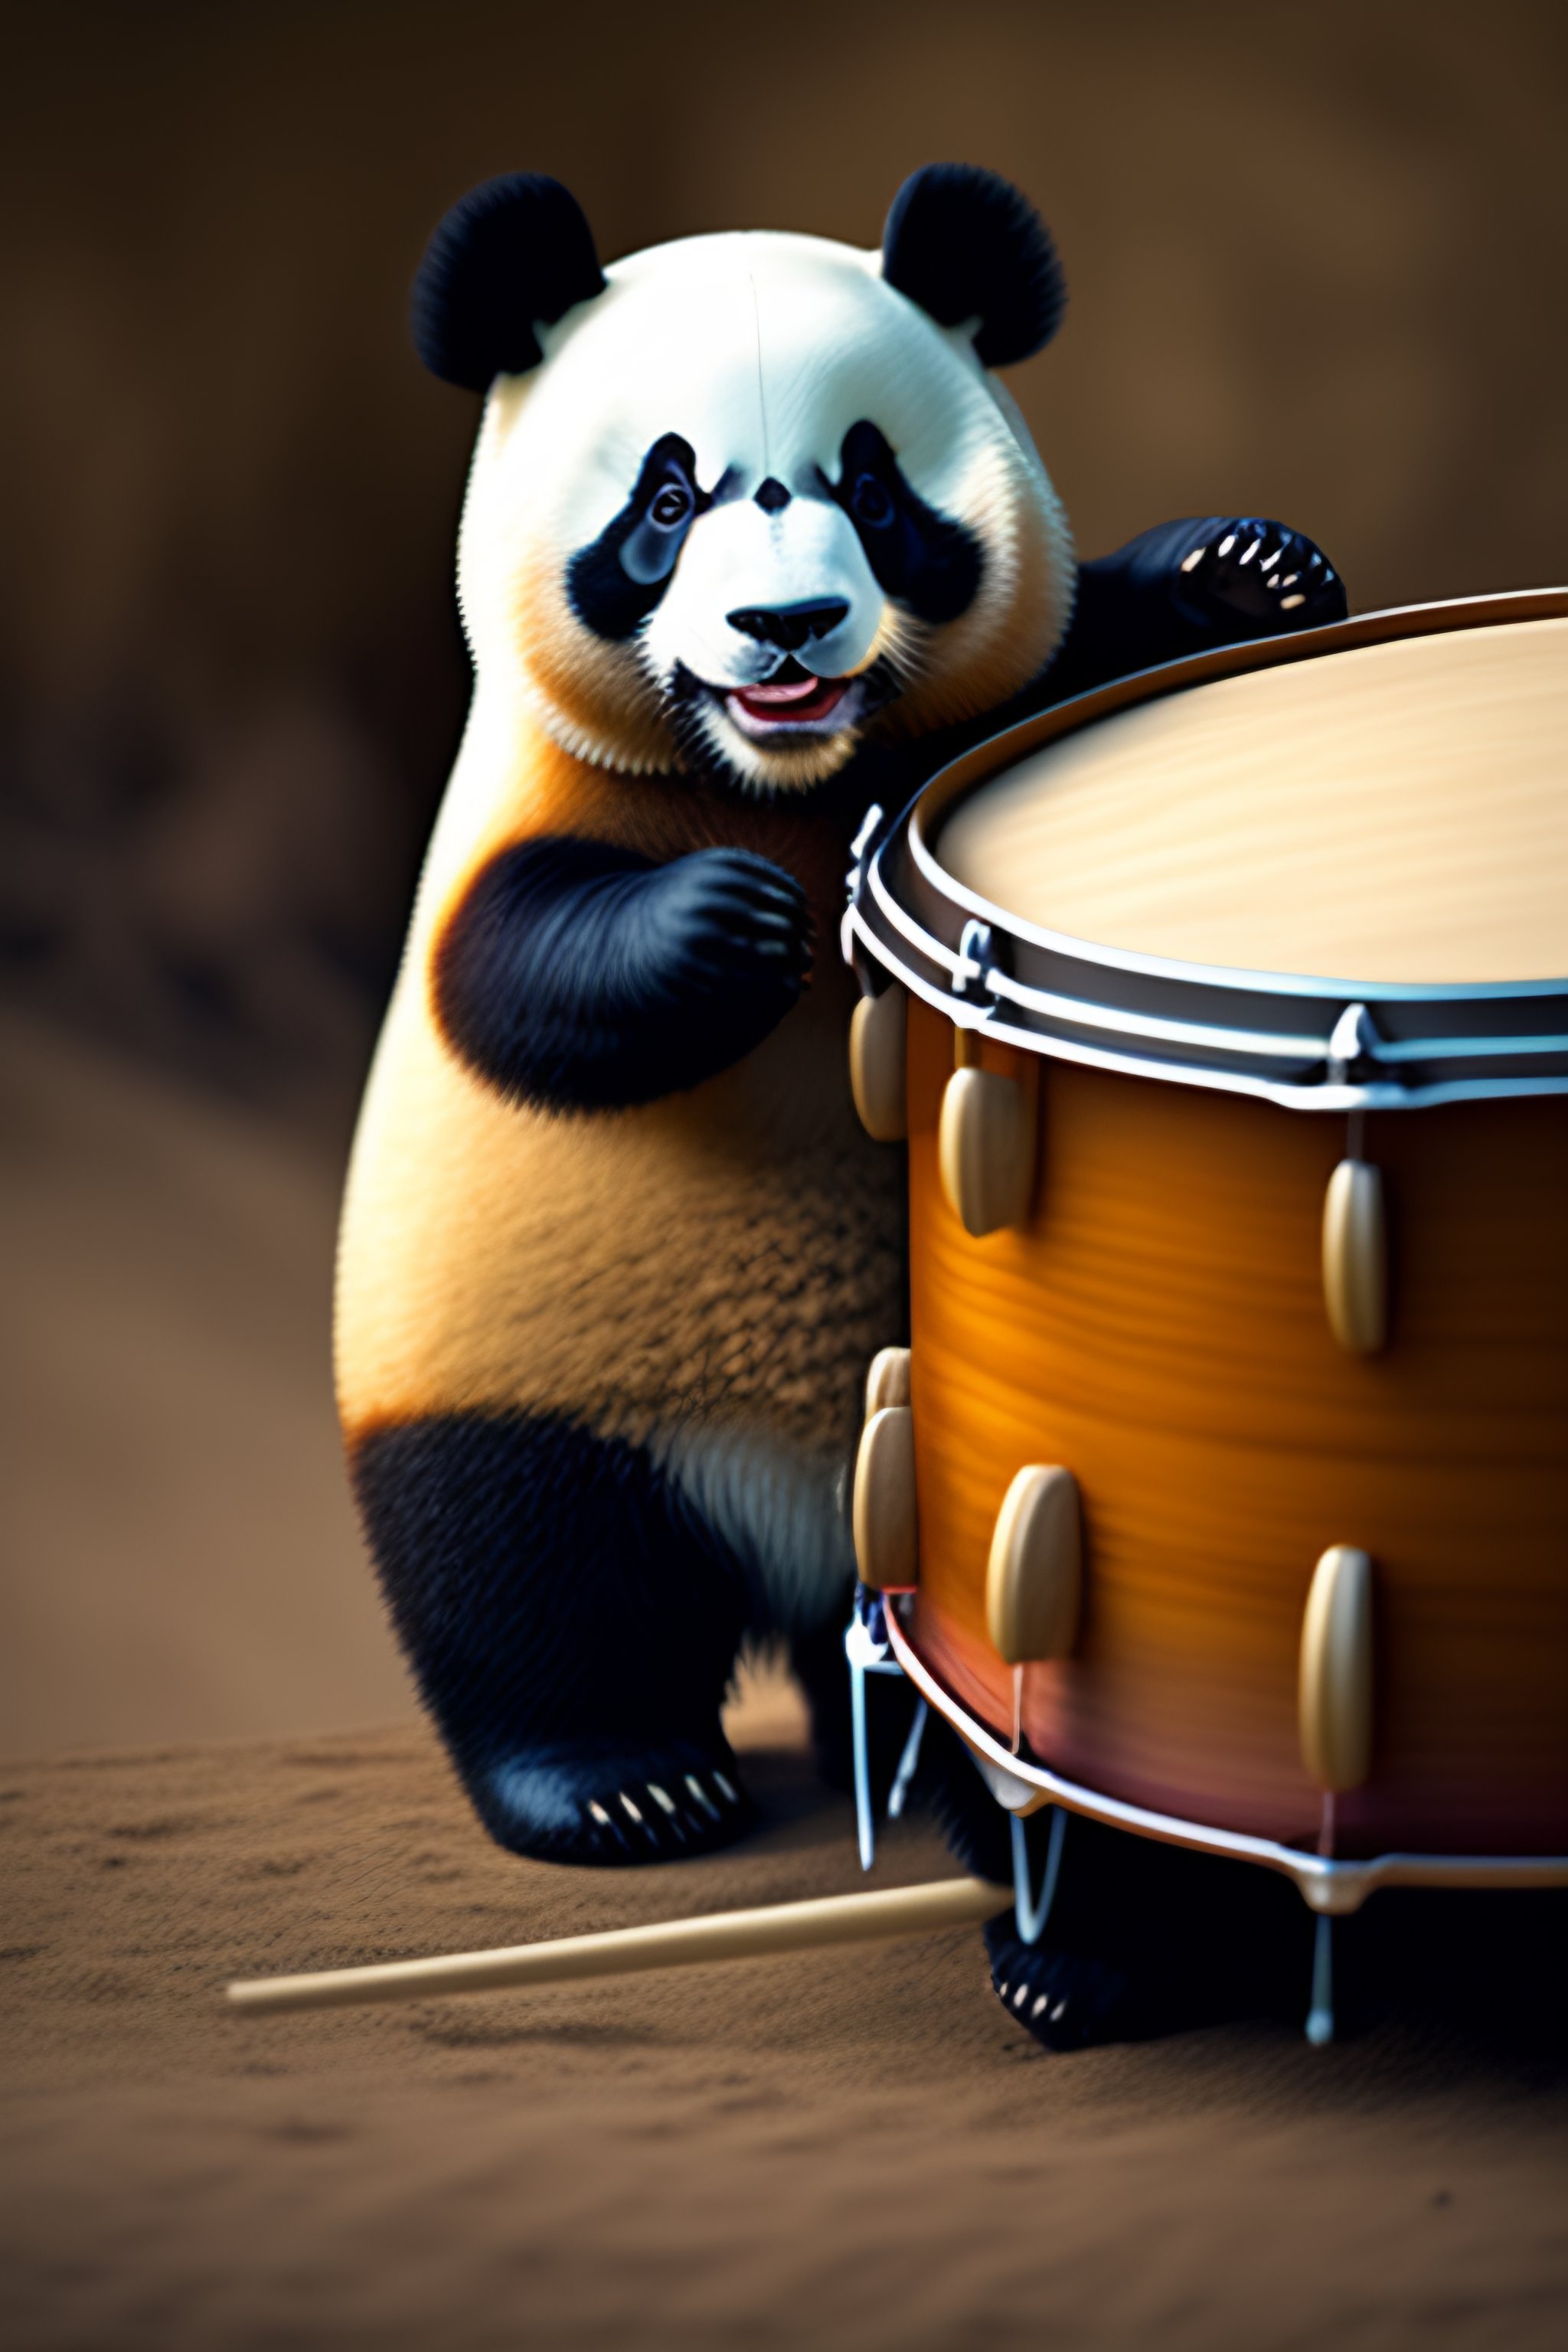 panda playing drums - Google Search